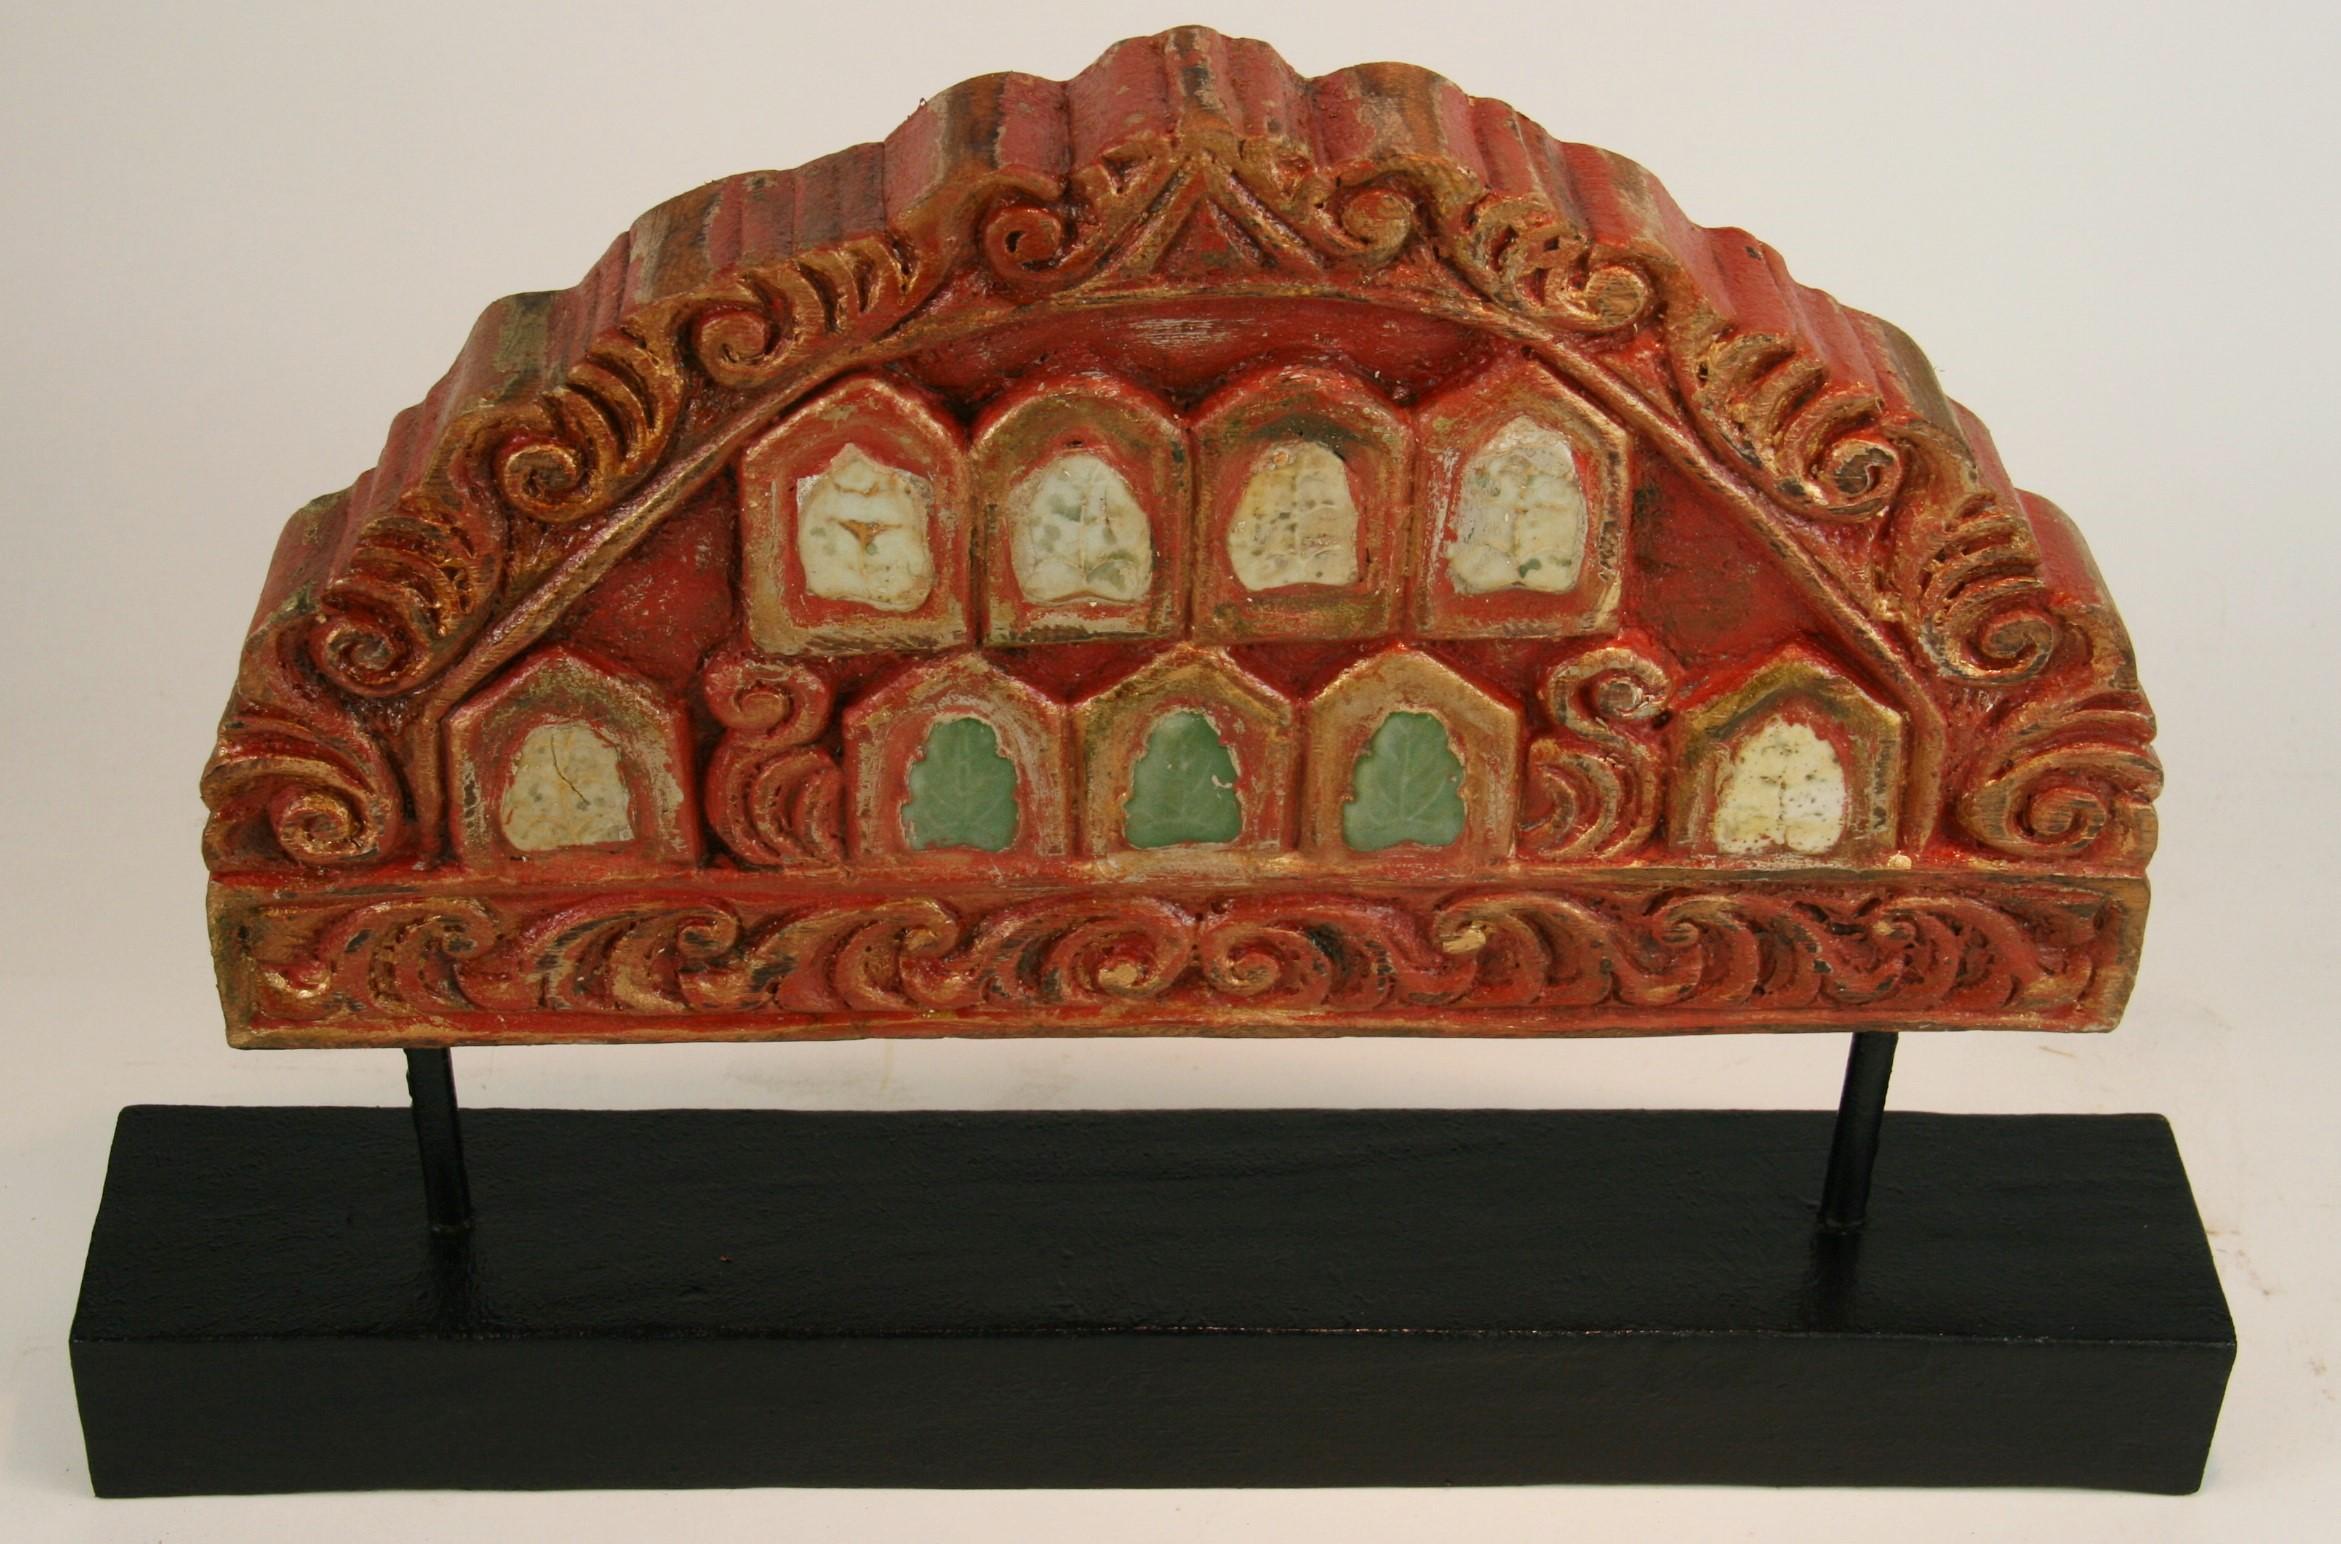 3-446 Fragments architecturaux de temple indien sculptés à la main avec des incrustations de céramique.
Monté sur un socle en bois personnalisé.